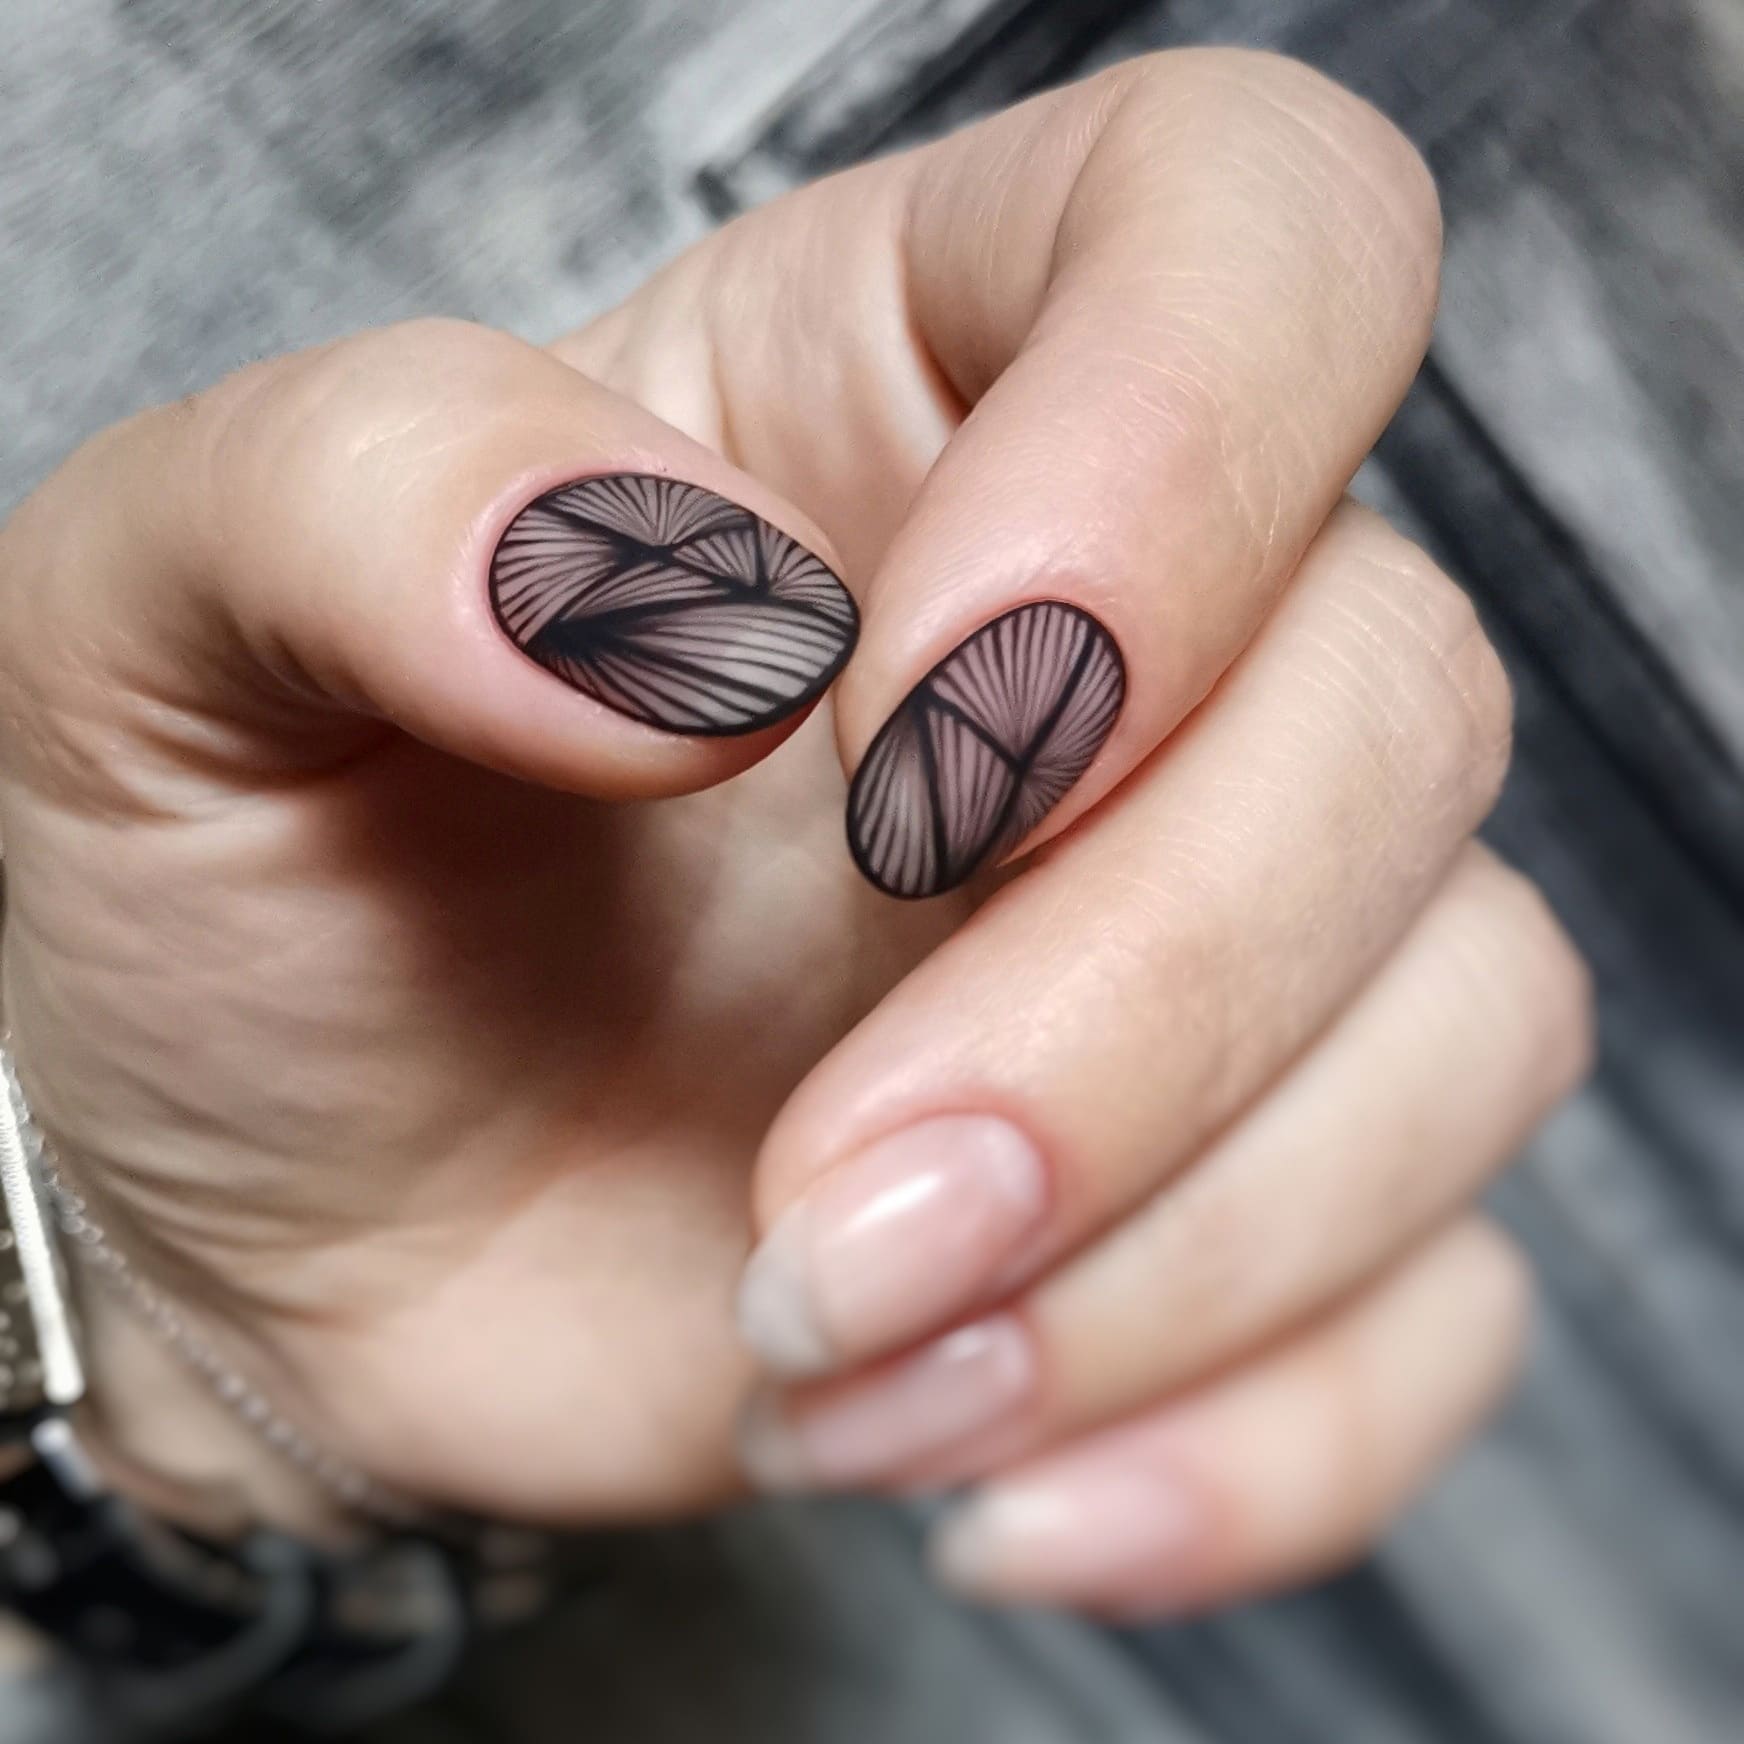 Новинки дизайна ногтей - маникюр «Слезы единорога» фото и видео как делать